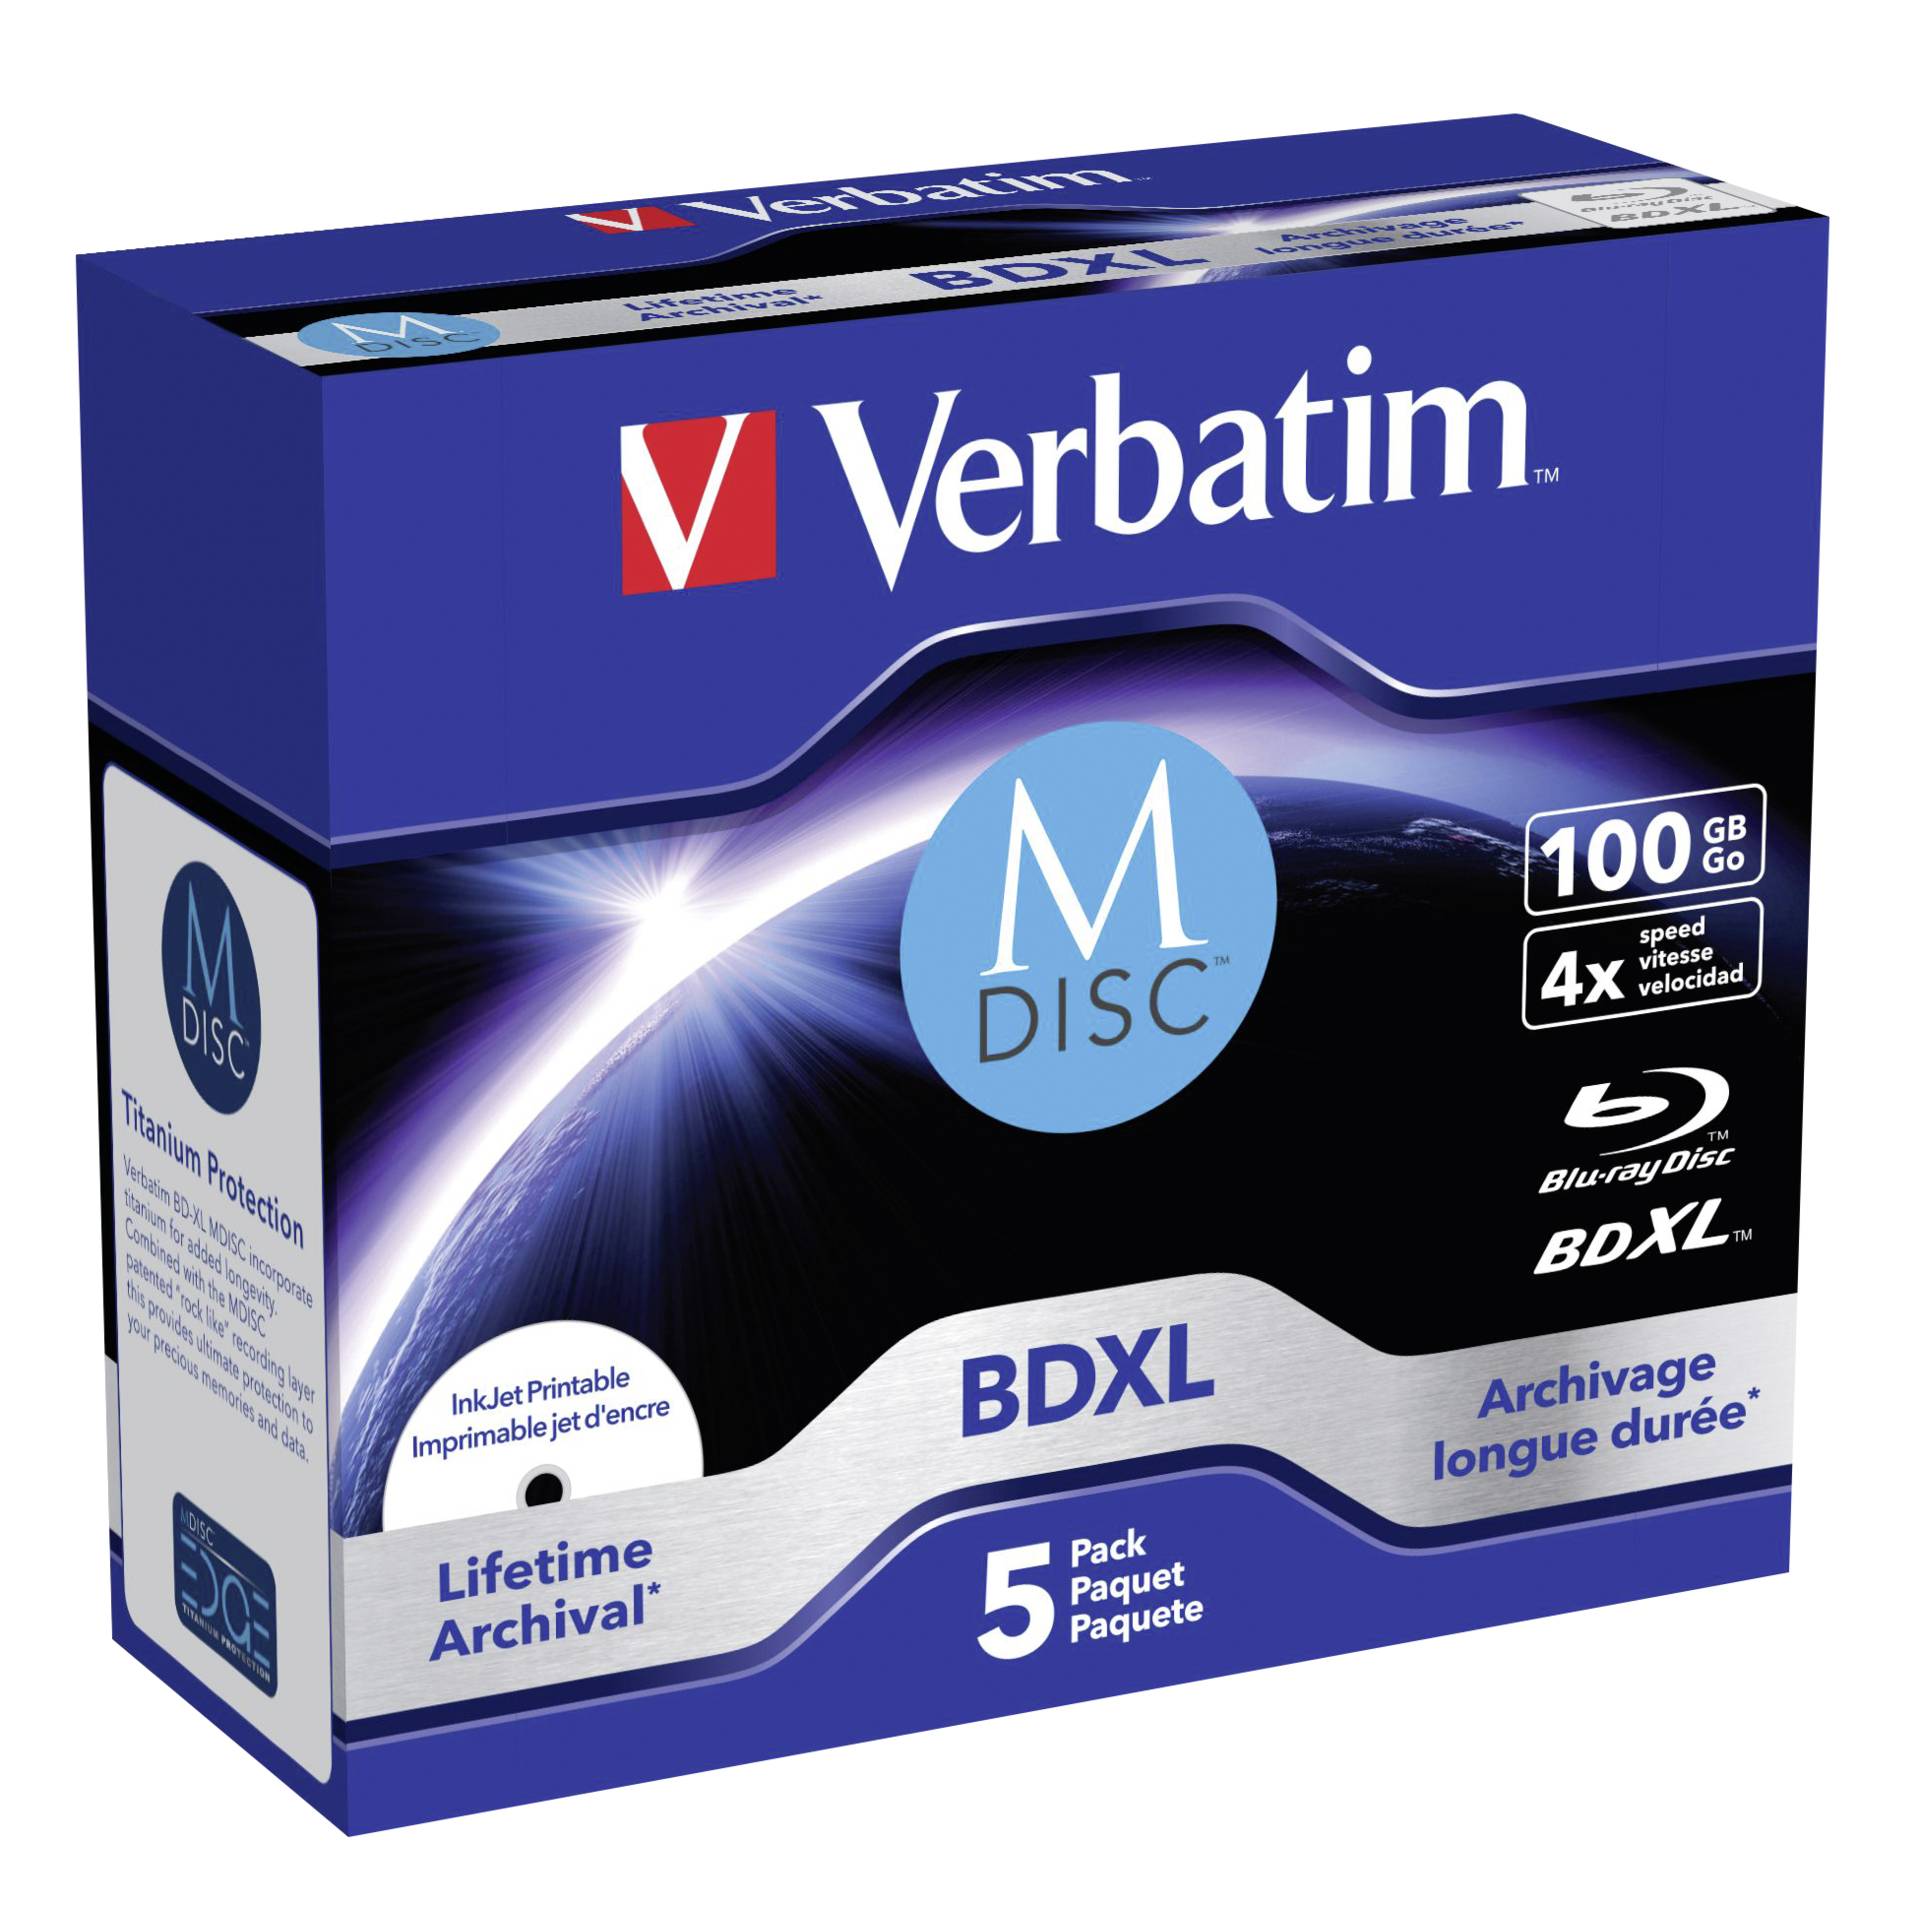 1x5 Verbatim M-Disc BD-R Blu-Ray 100GB 4x Speed inkjet print